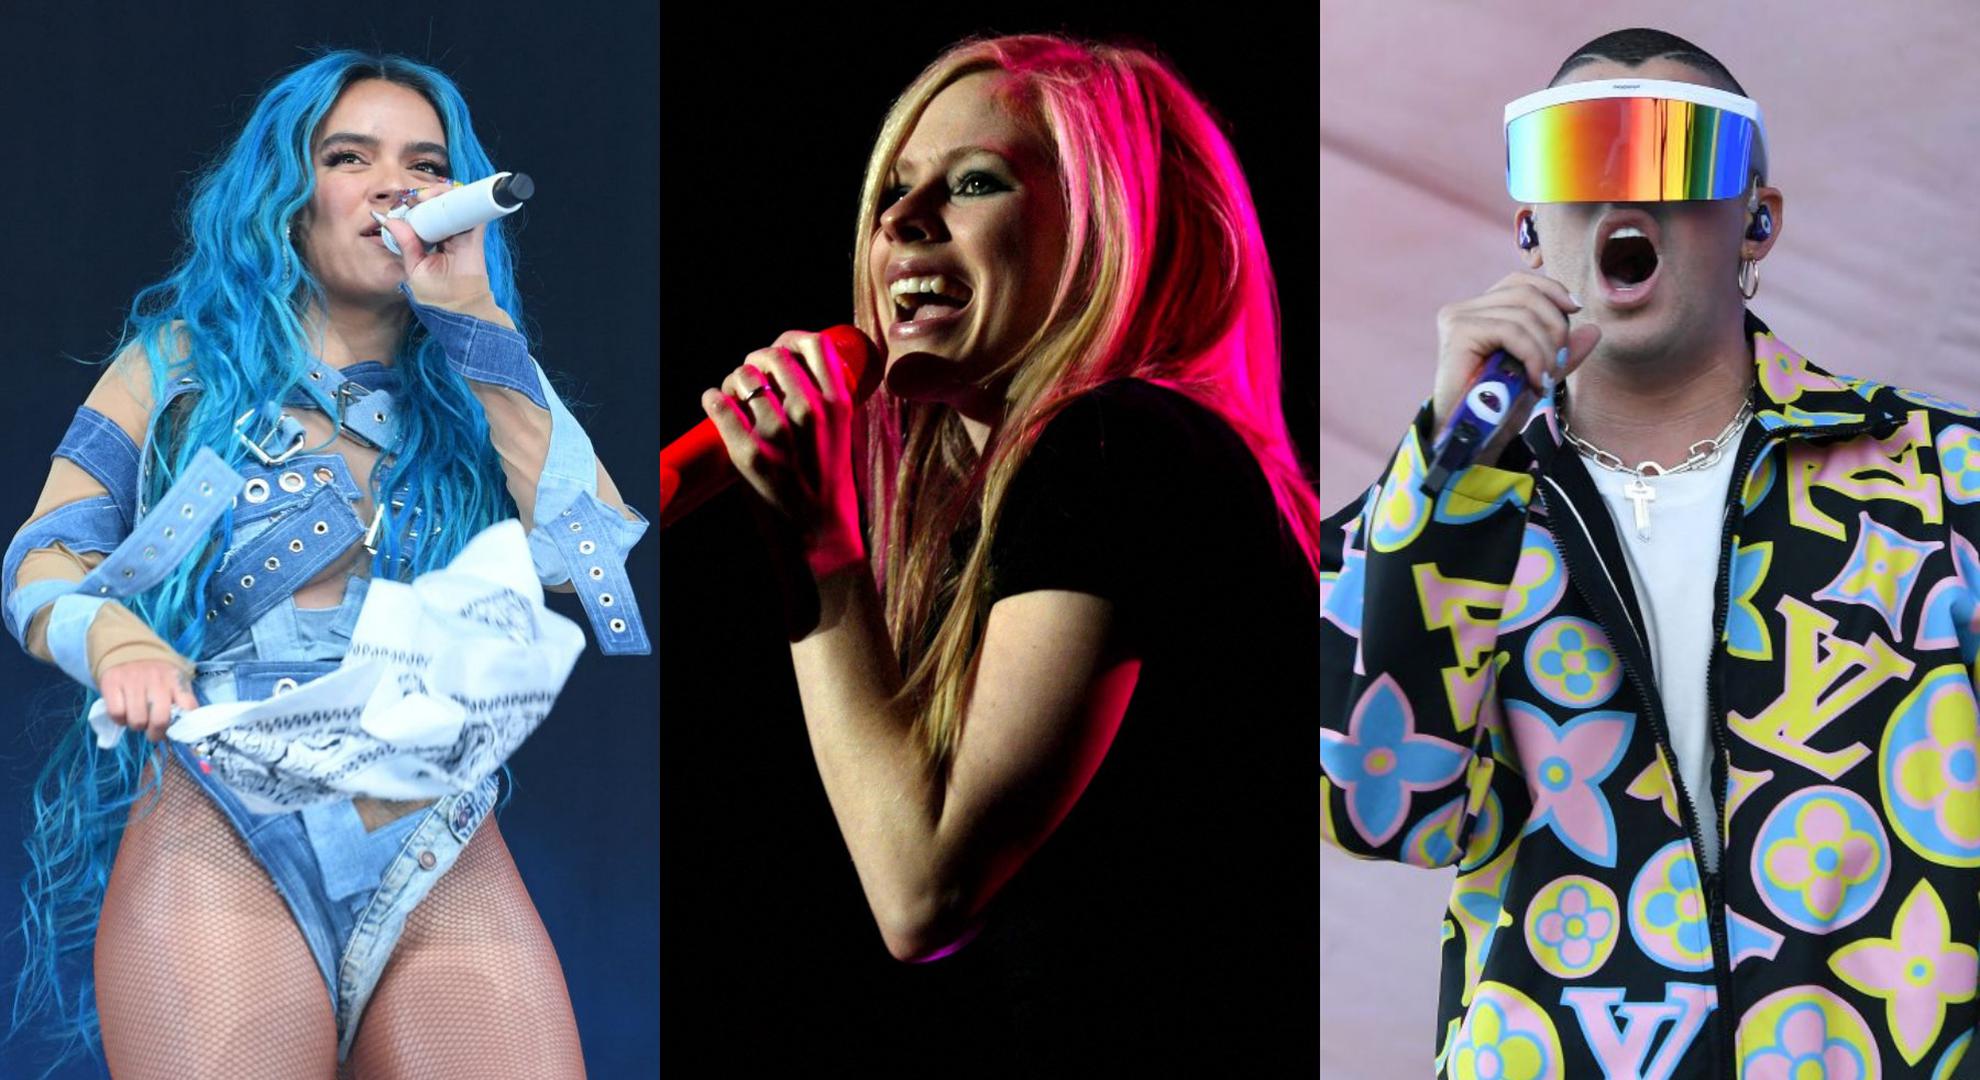 Conciertos en Perú 2022: ¿Quieres ver a Bad Bunny, Avril Lavigne y otros grandes shows en Lima? Esto tienes que gastar